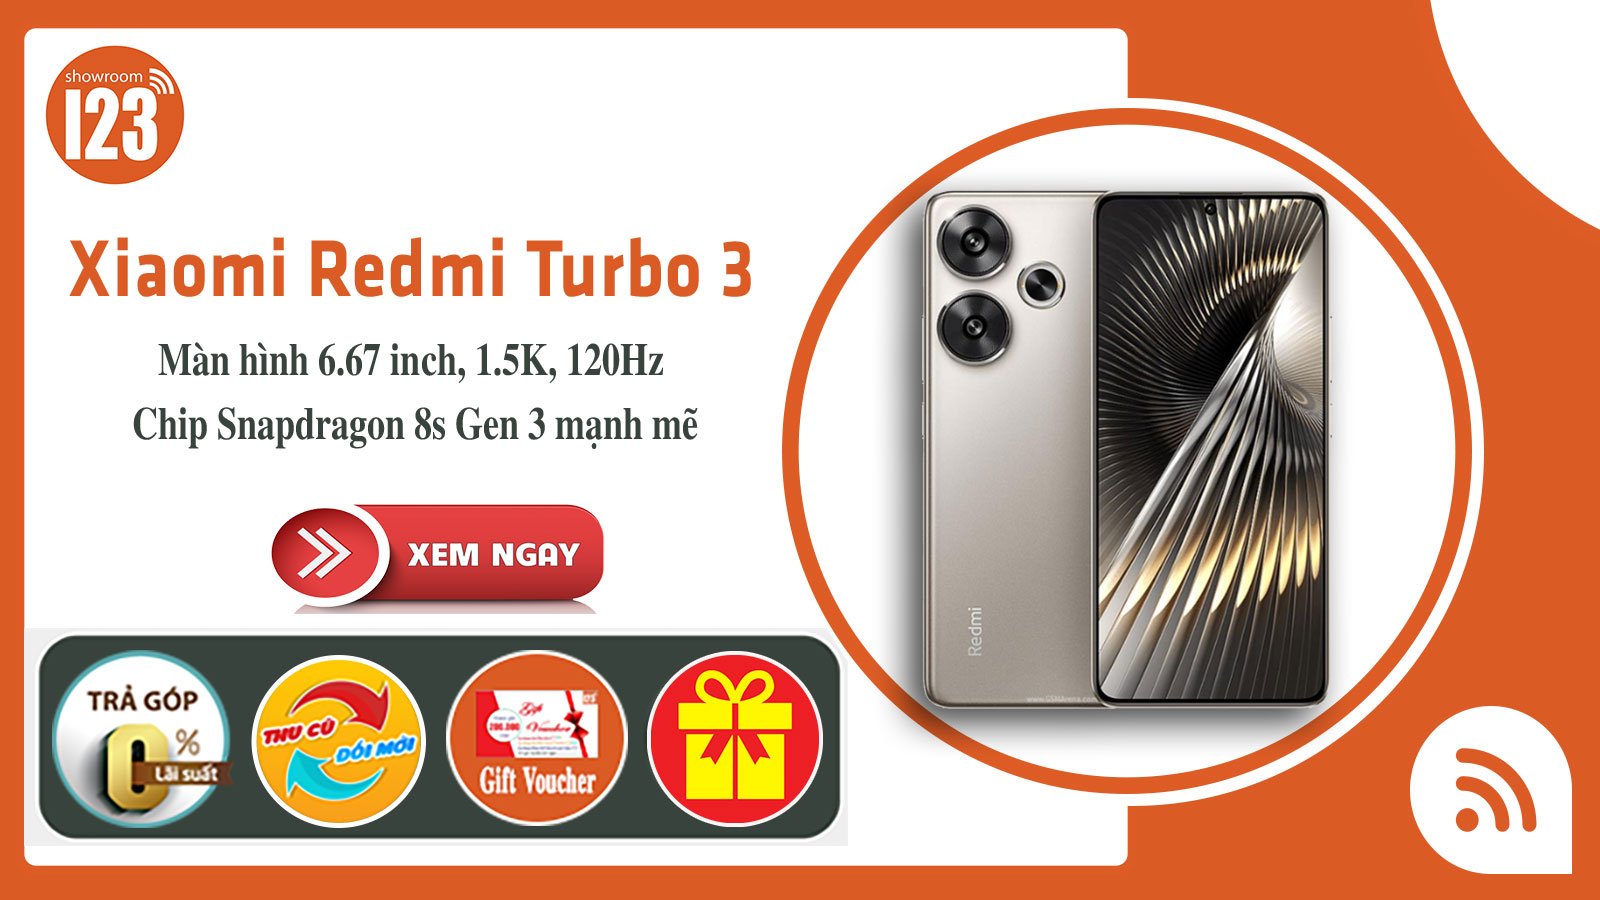 Redmi Turbo 3 5G <br> Snap 8s Gen 3 mạnh mẽ